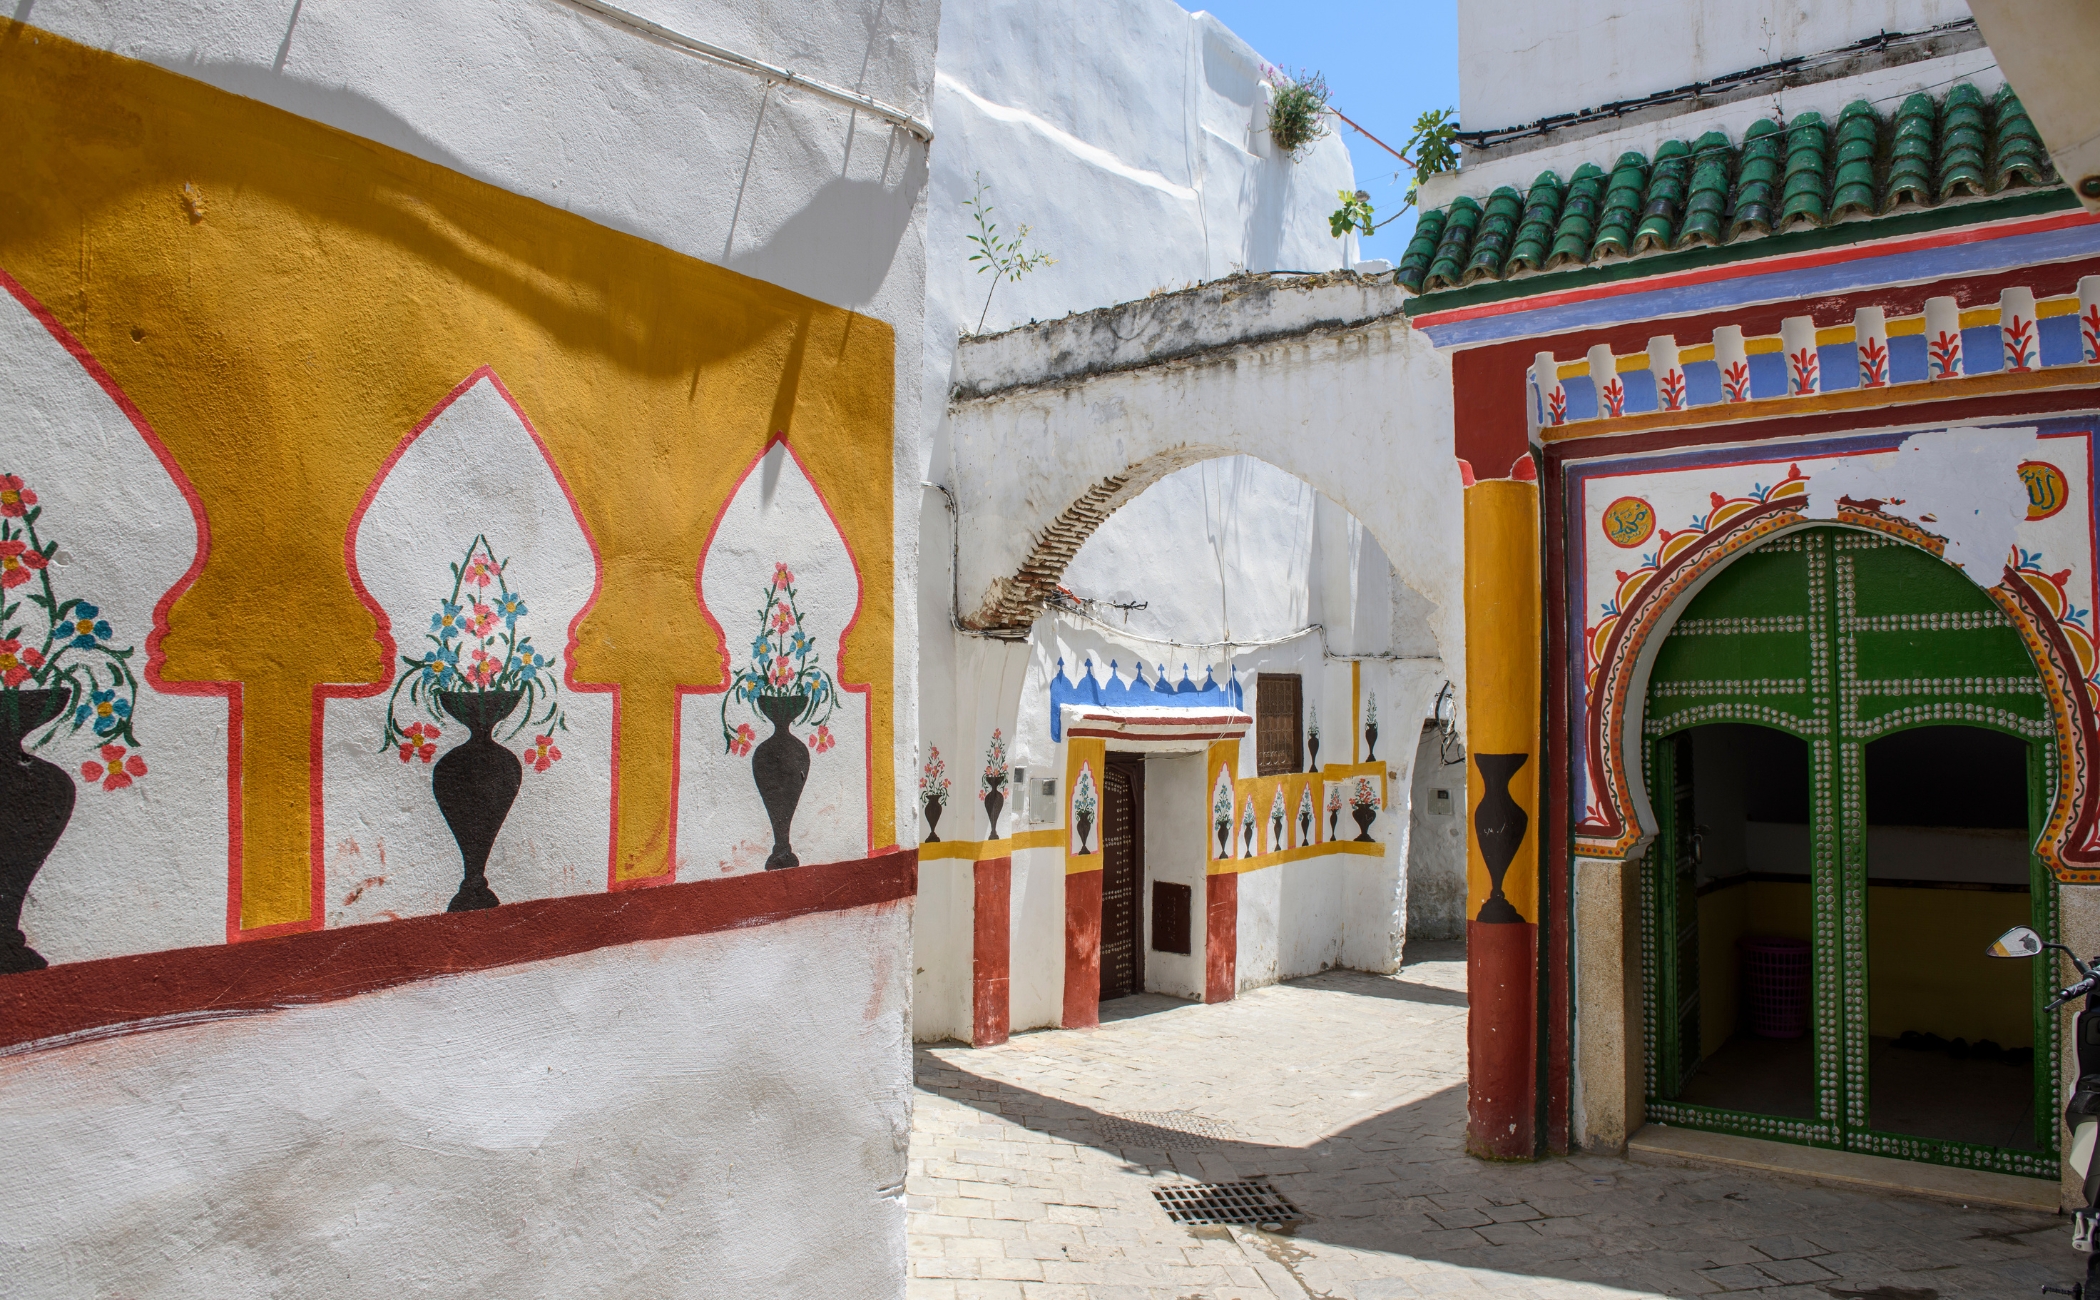 Street of Tetouan, Morocco, entrance of a mosque